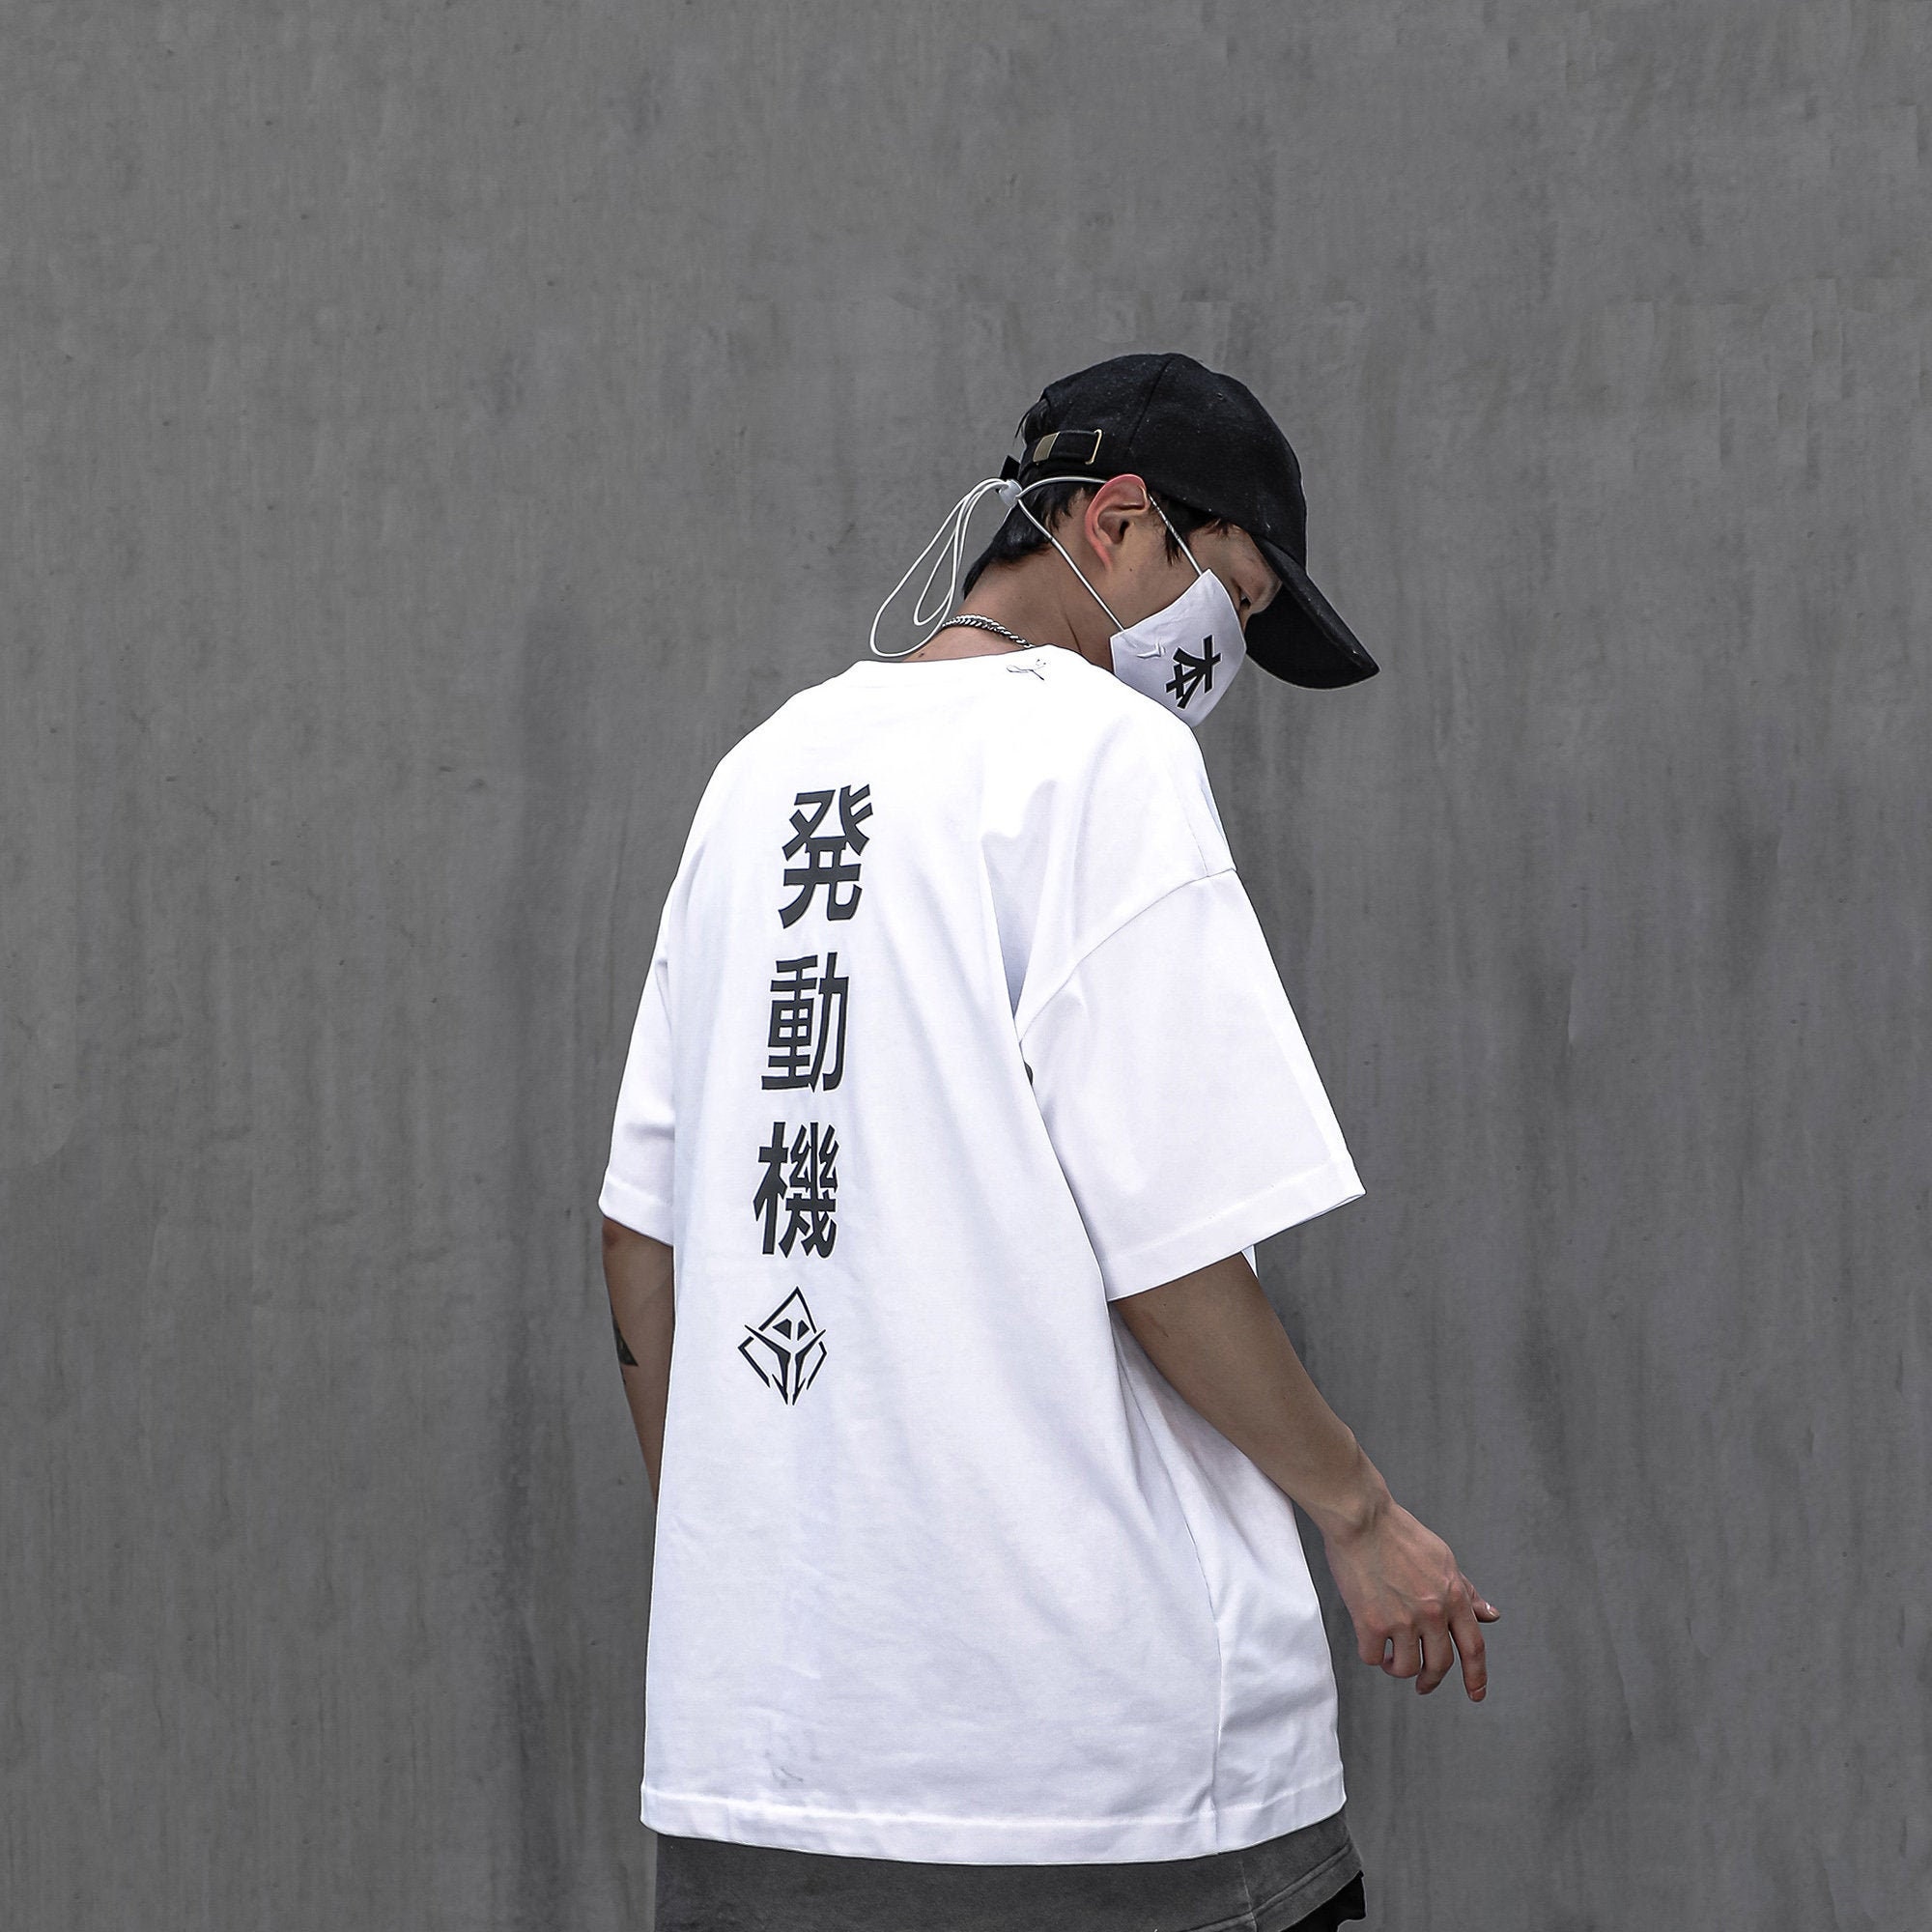 MFCT Summer Streetwear White Kanji Tee Urban Fashion T-shirt for Men